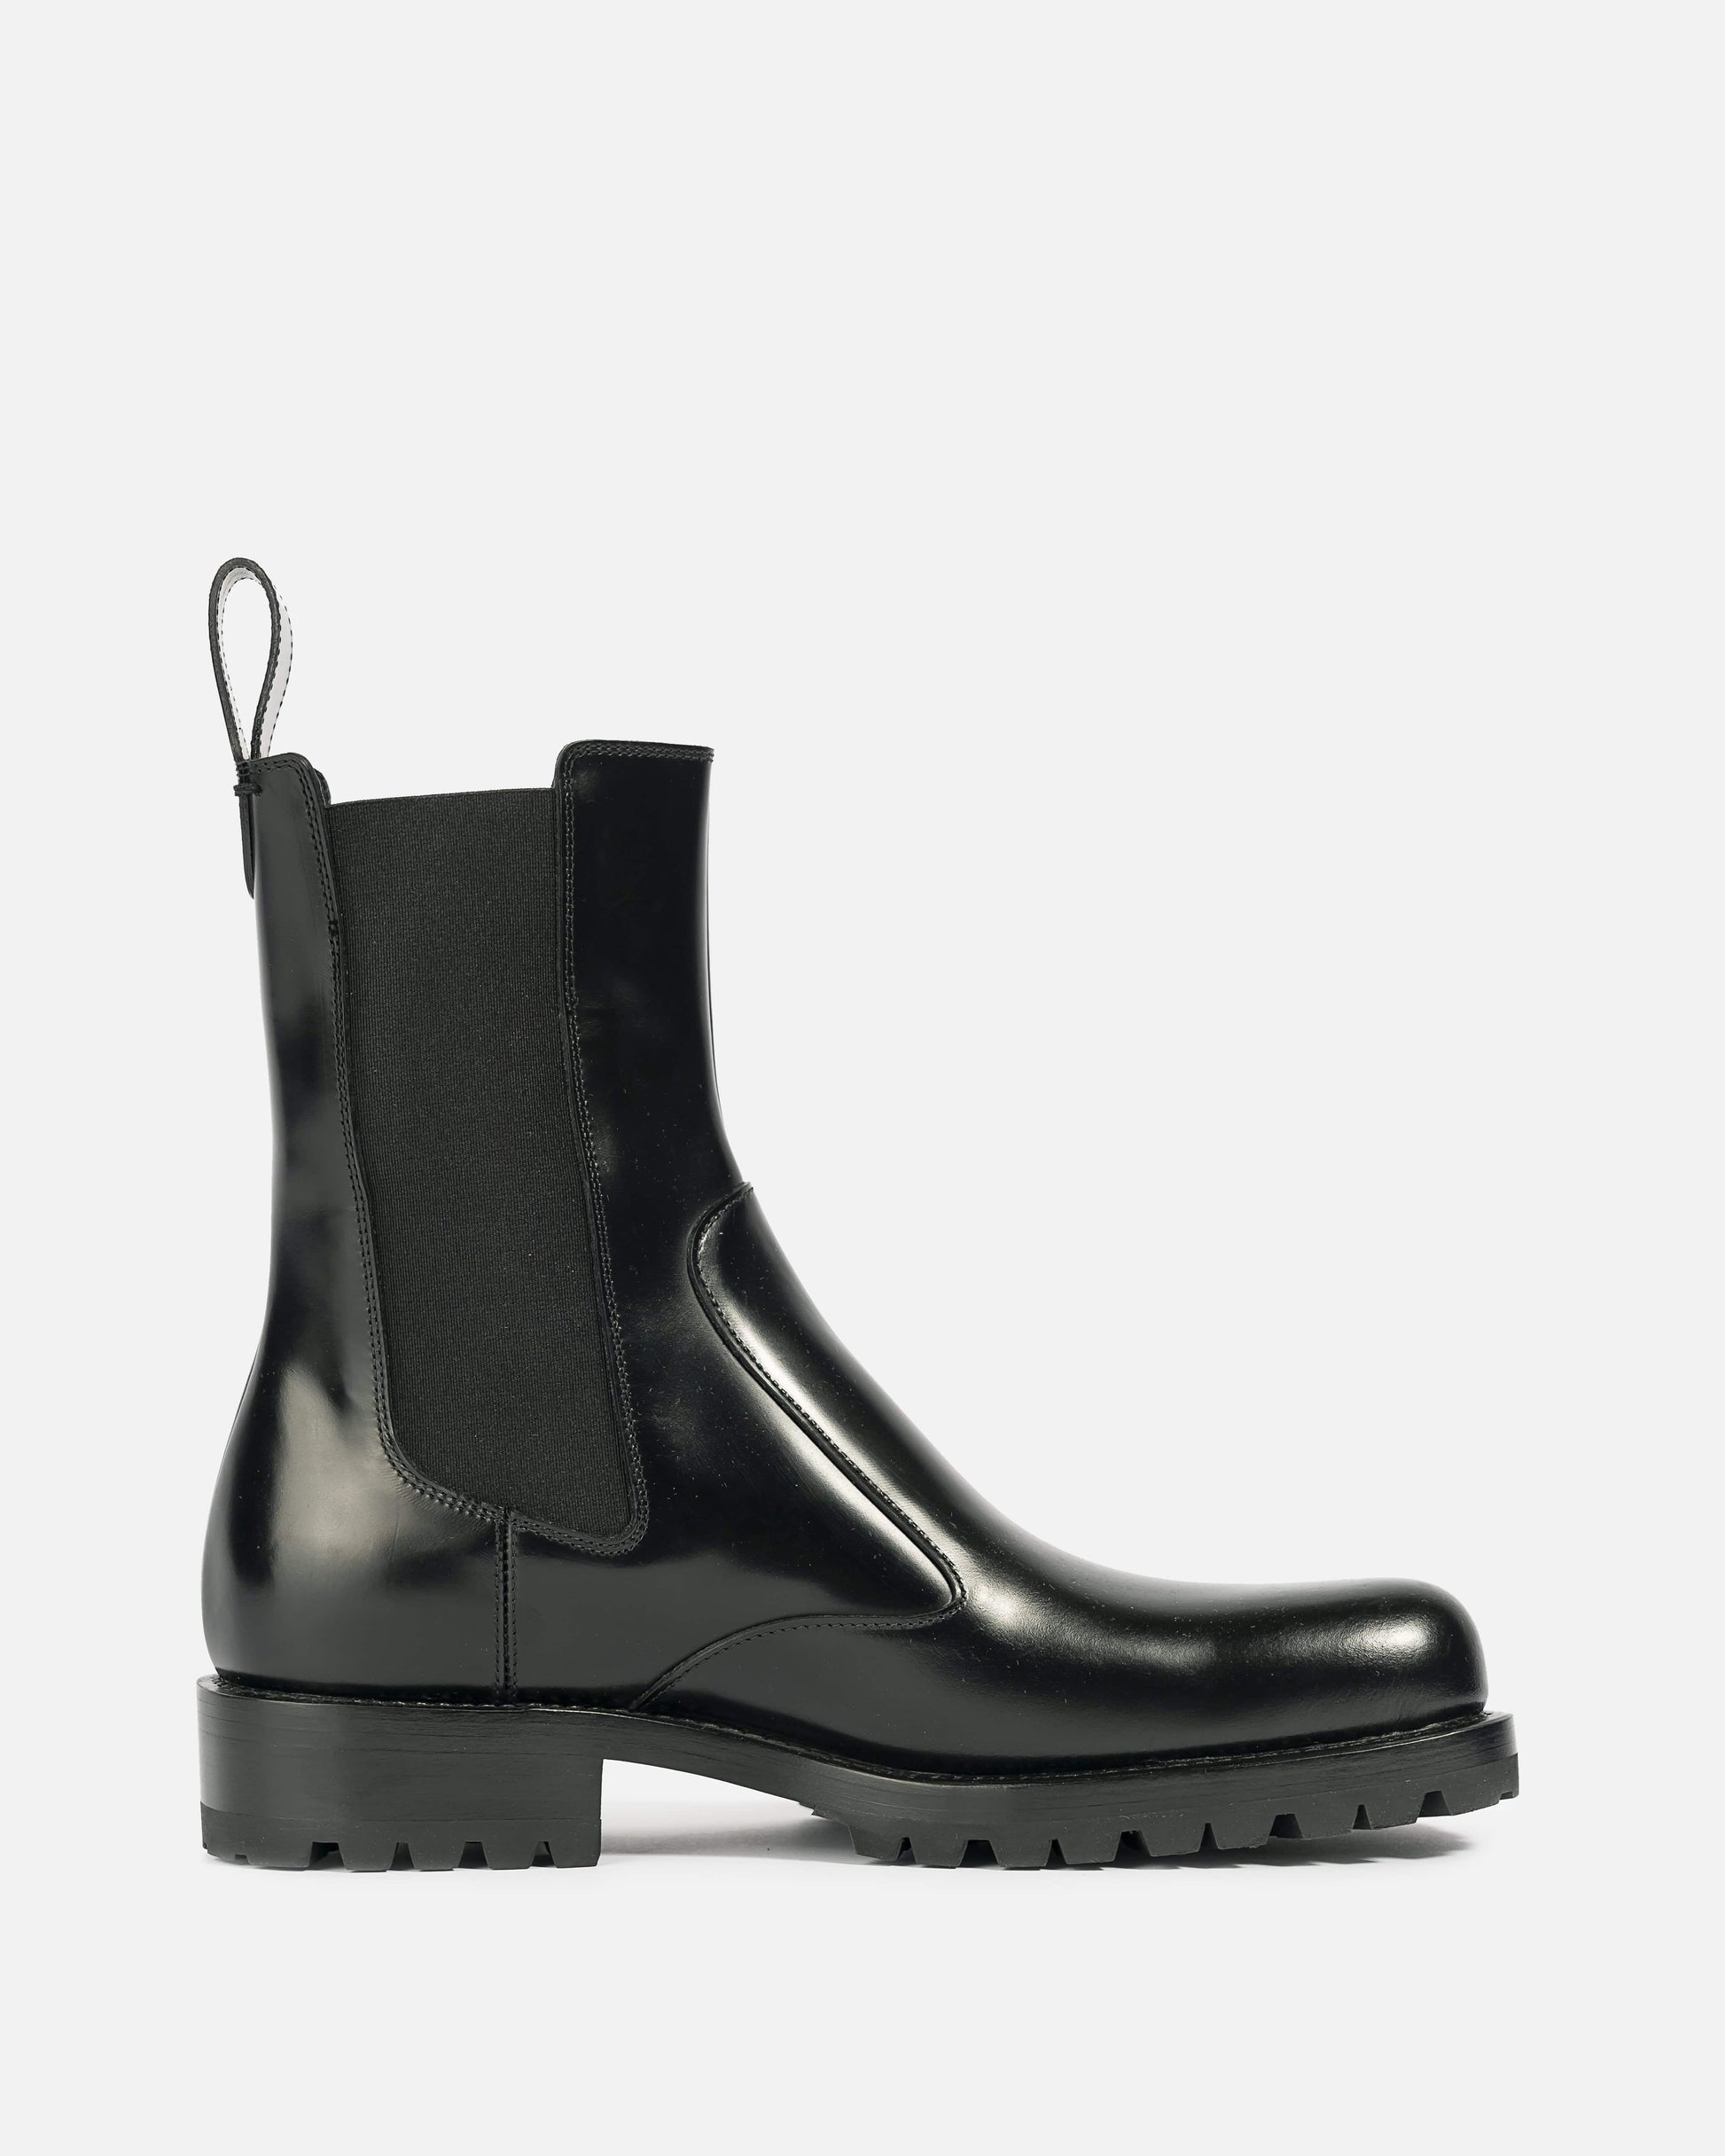 Dries Van Noten Men's Boots Square Toe Chelsea Boot in Black